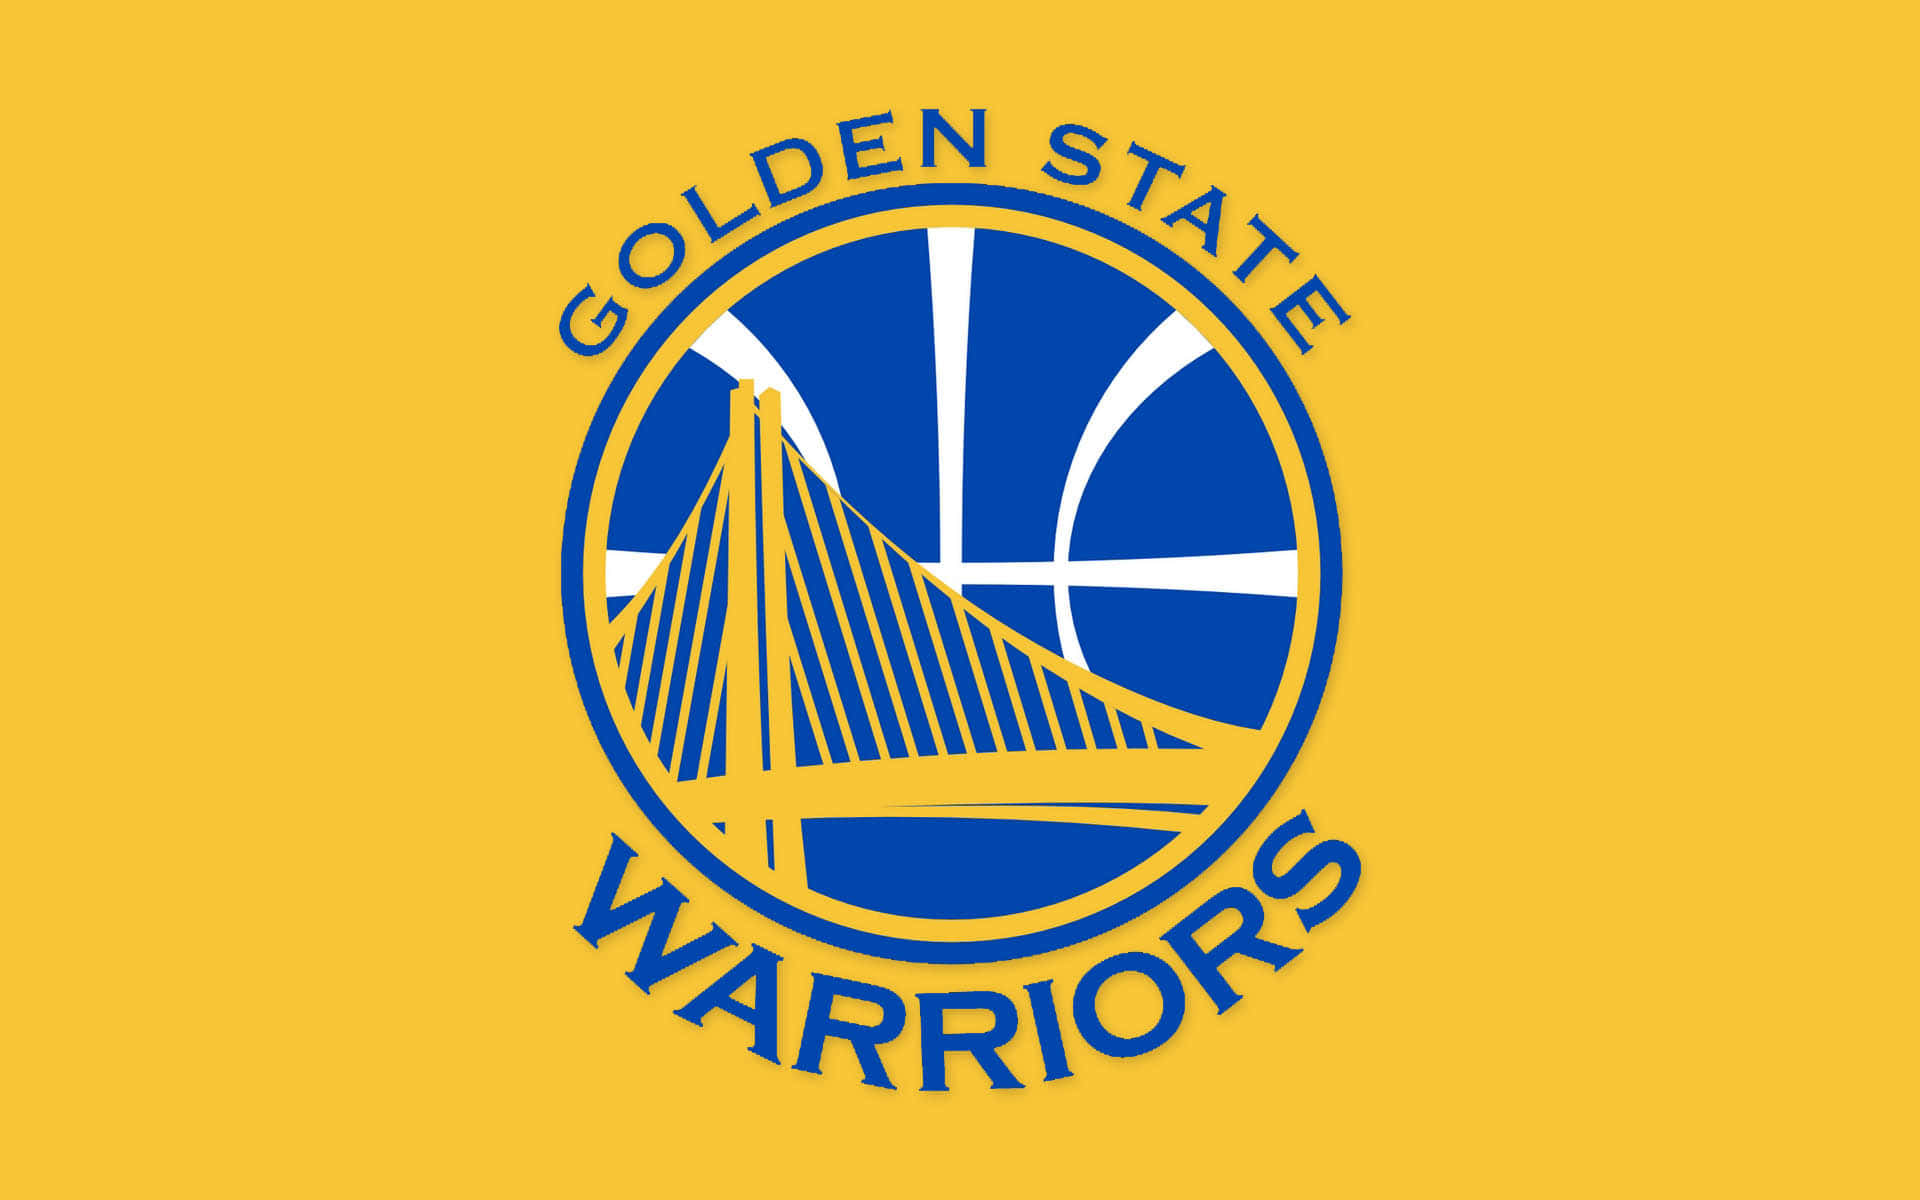 Logodo Golden State Warriors Contra Um Fundo Das Cores Da Equipe. Papel de Parede